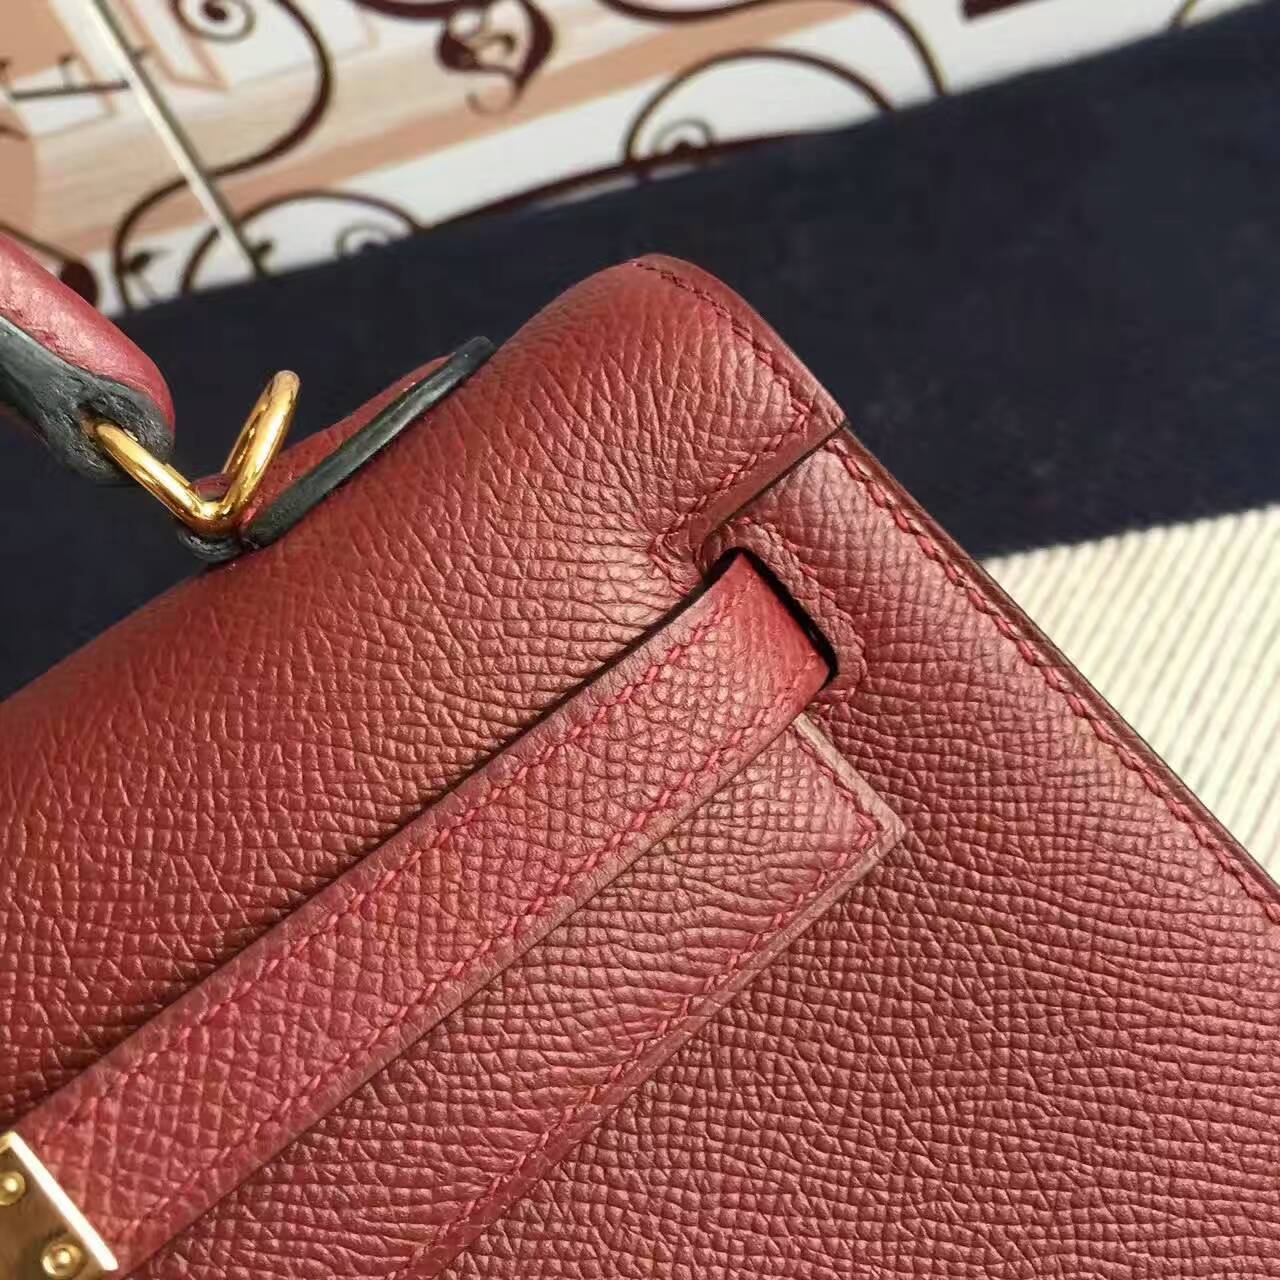 Cheap Hermes Kelly25cm Handbag in CC55 Rouge Hermes Epsom Calfskin Leather